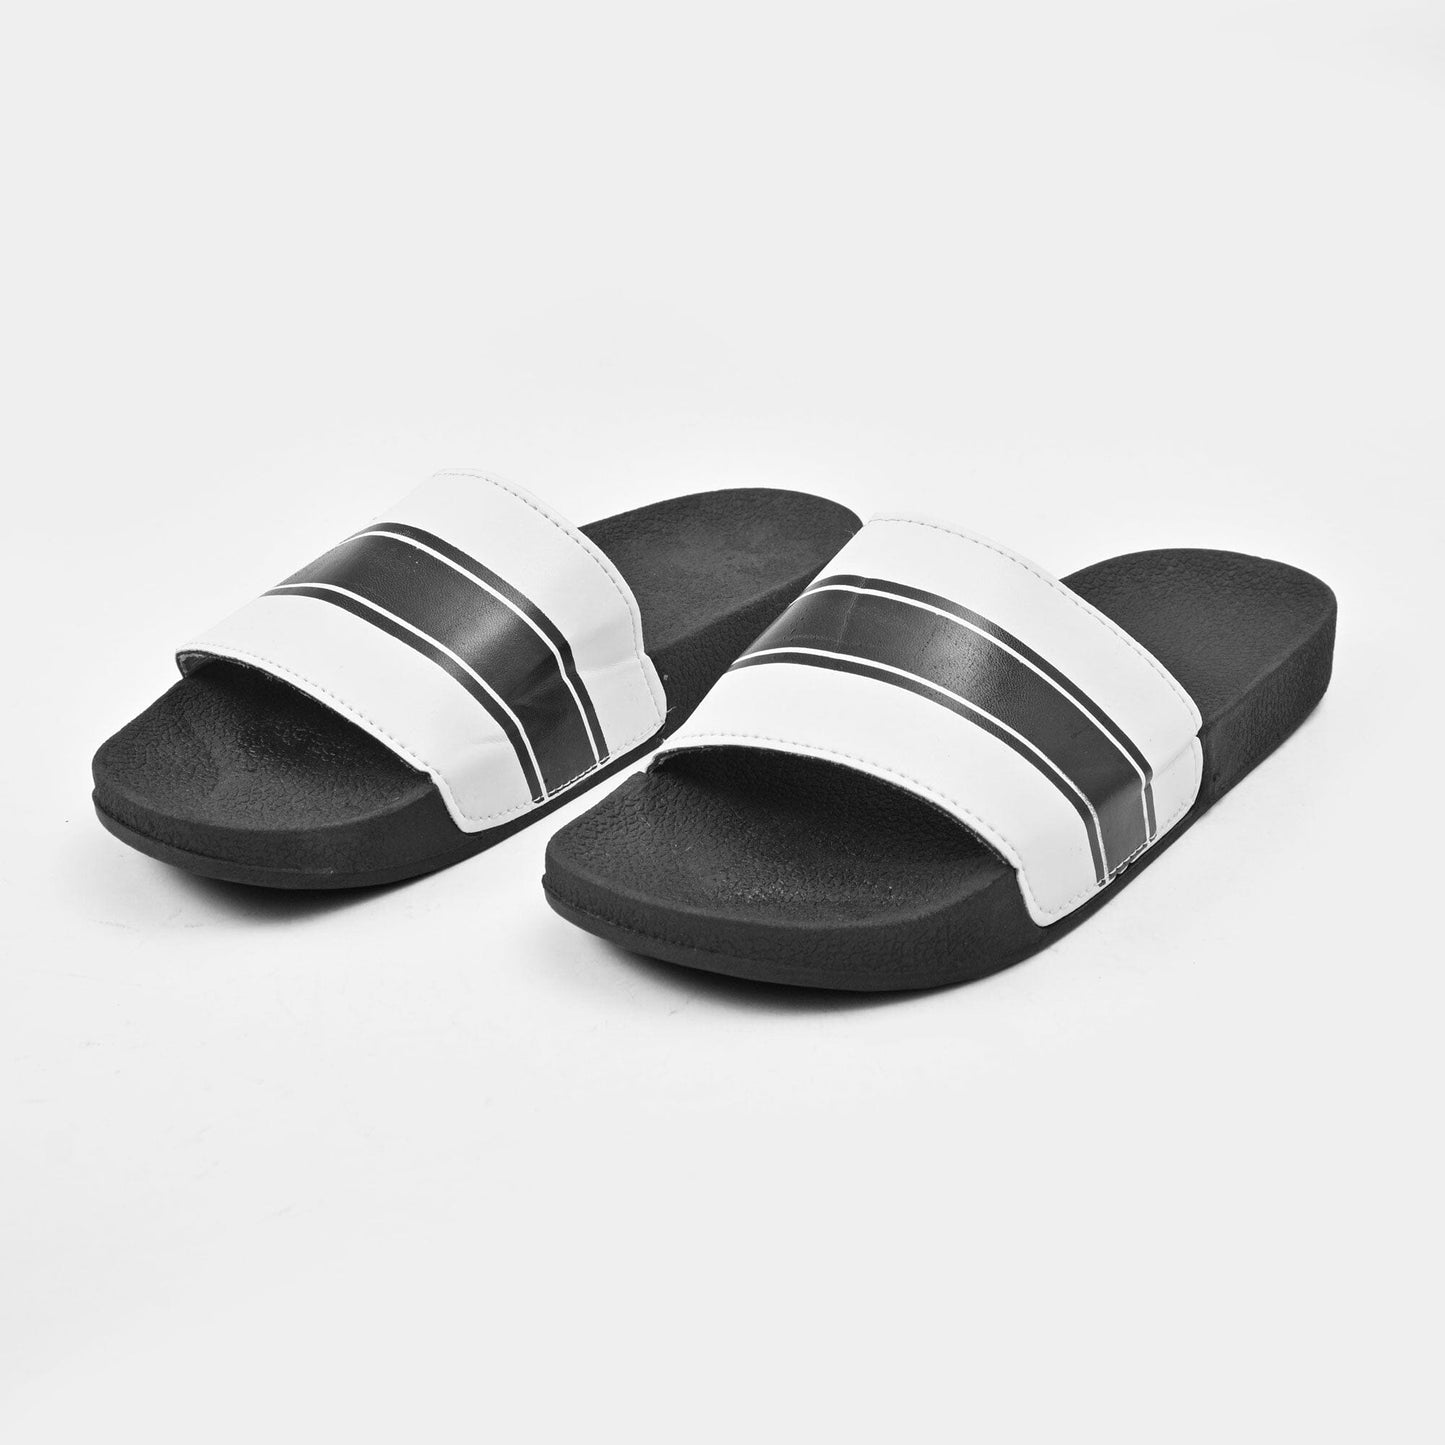 Men's Comfort Contrast Design Soft Slides Men's Shoes Hamza Traders Black & White EUR 39 